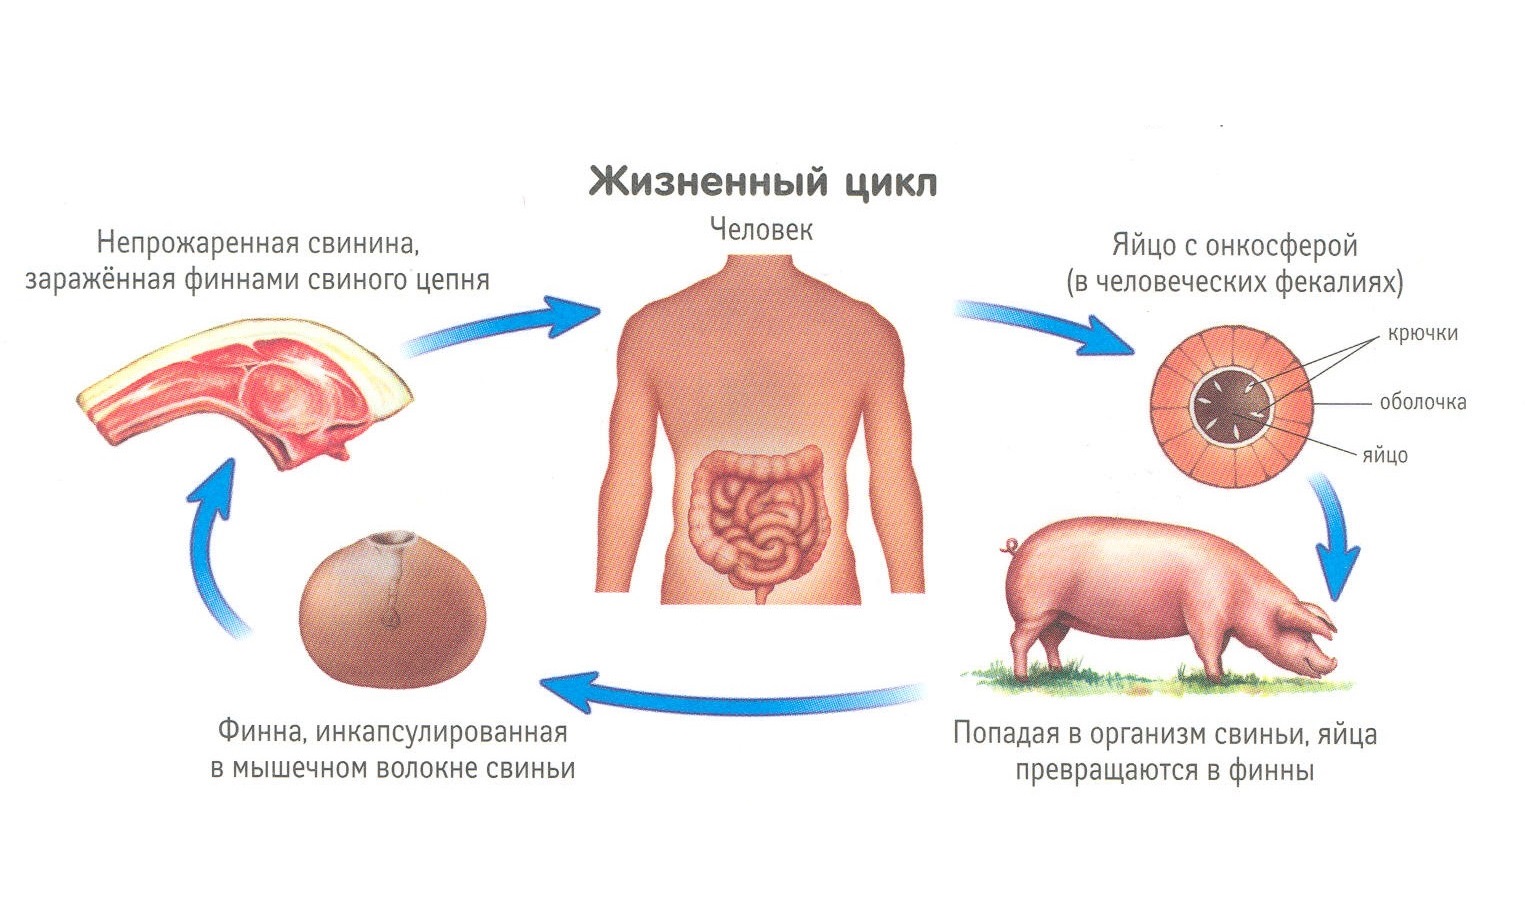 Цикл развития свиного солитера схема